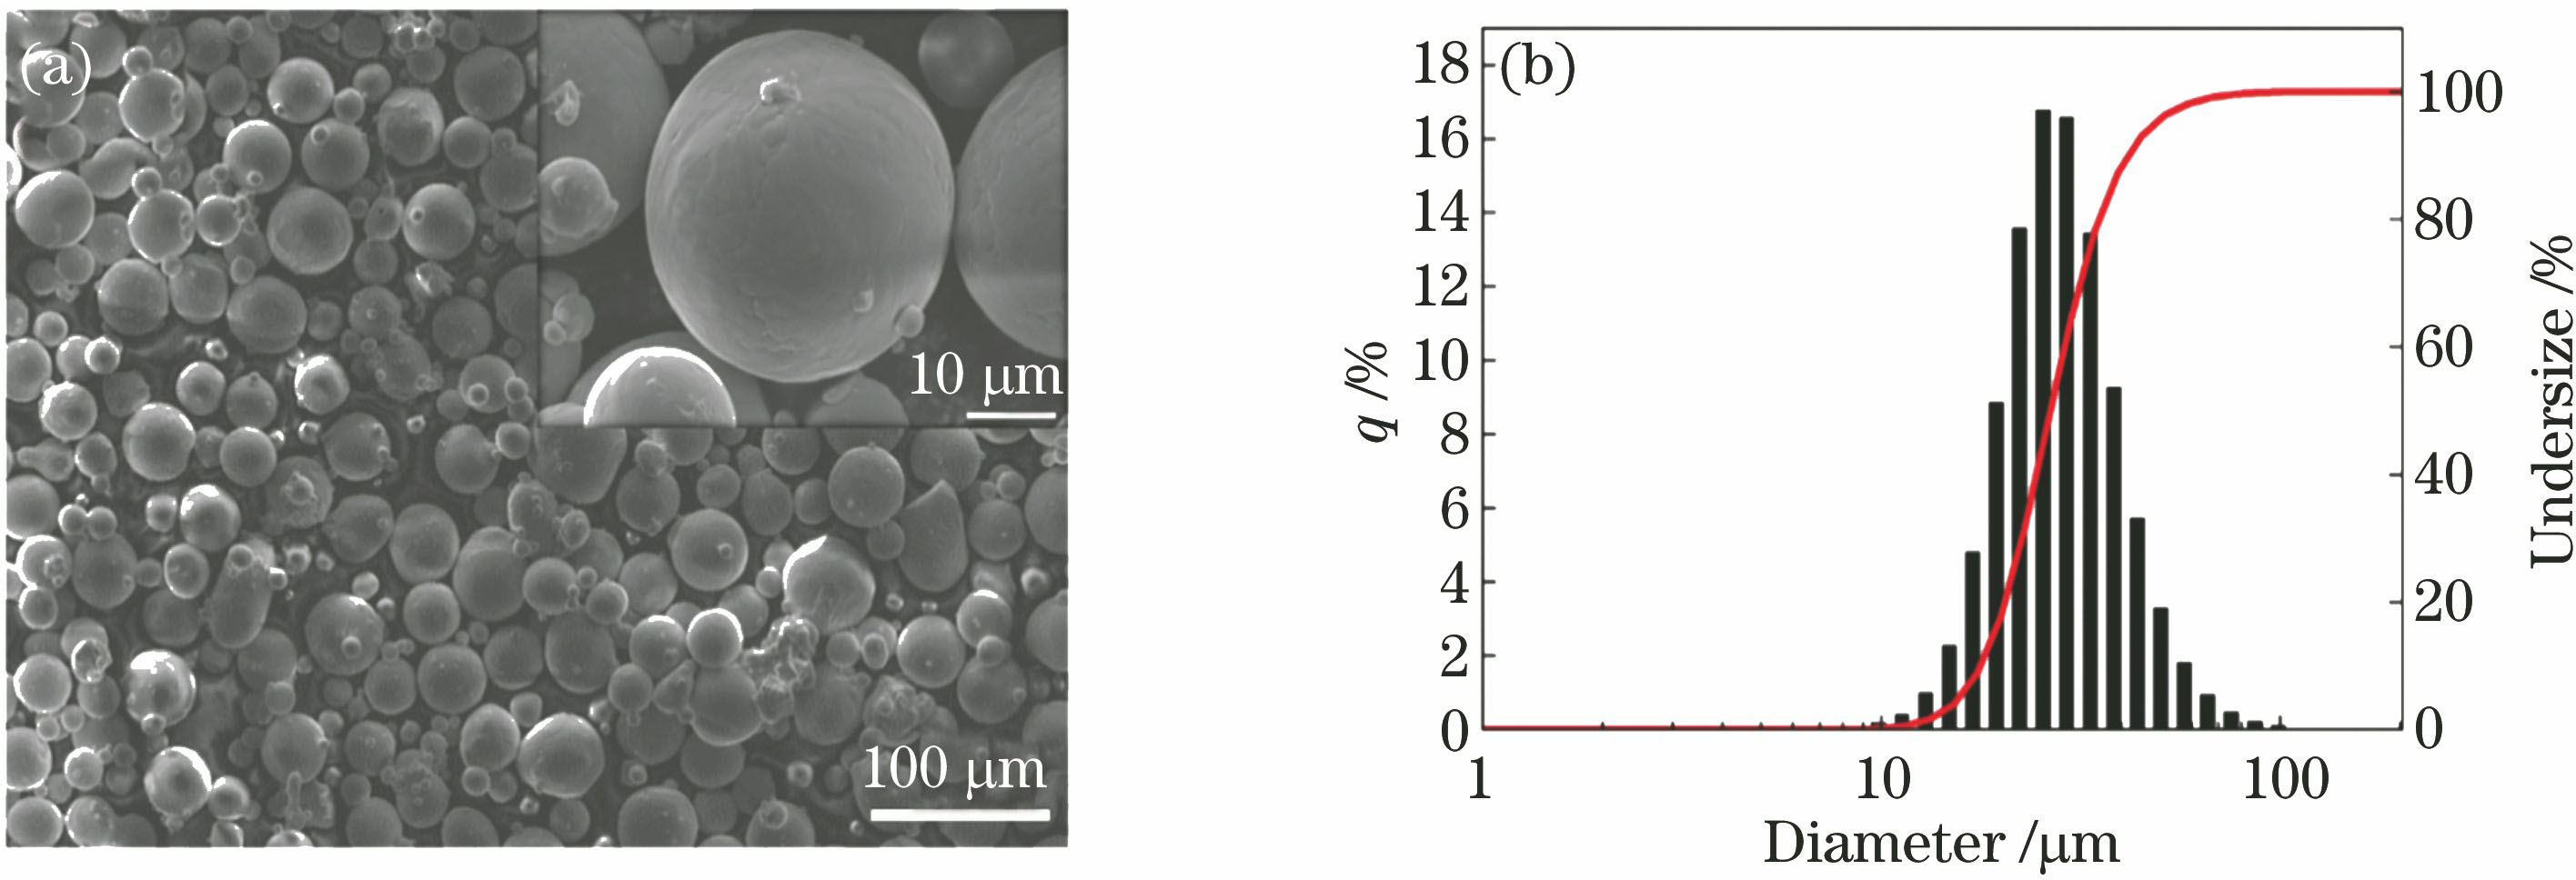 Micro-morphology and size distribution of Ti-6Al-4V powder. (a) Morphology; (b) size distribution